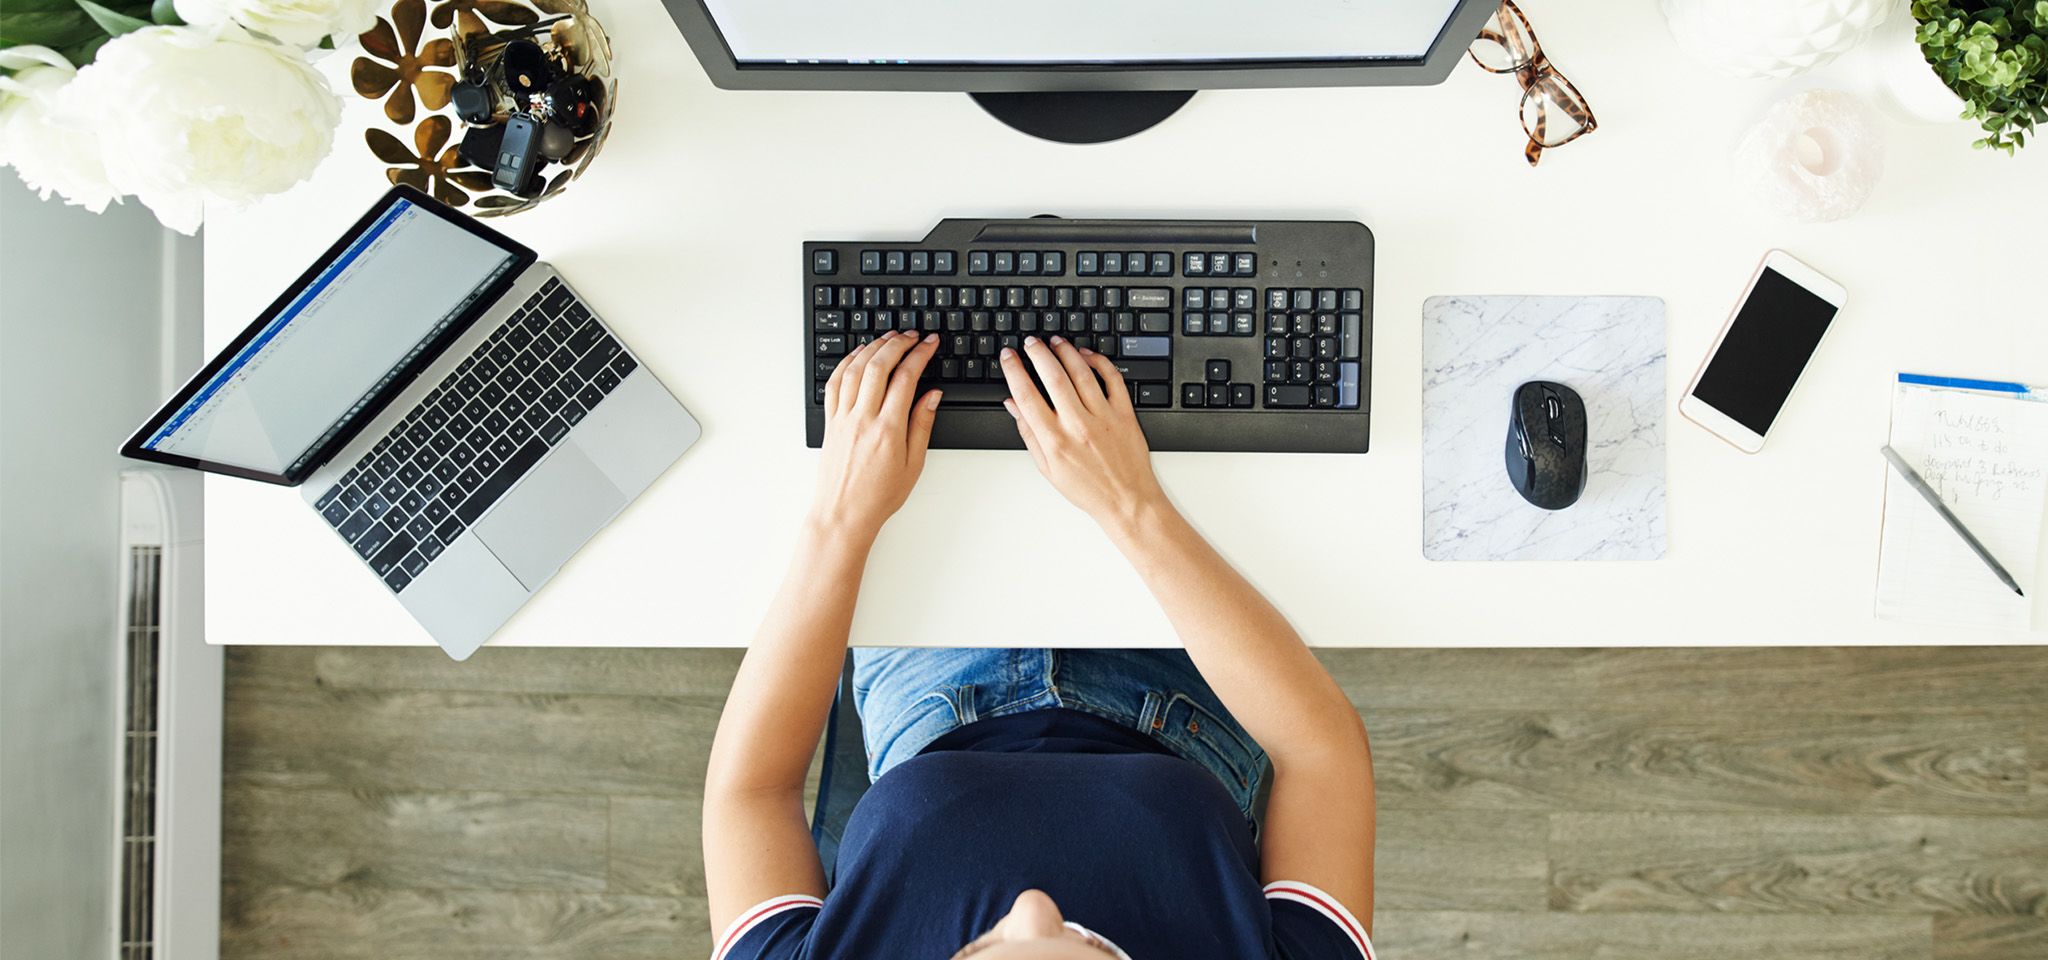 一张俯视图，其中一人在电脑桌上用手操作键盘，附近有显示器、笔记本电脑、鼠标和手机